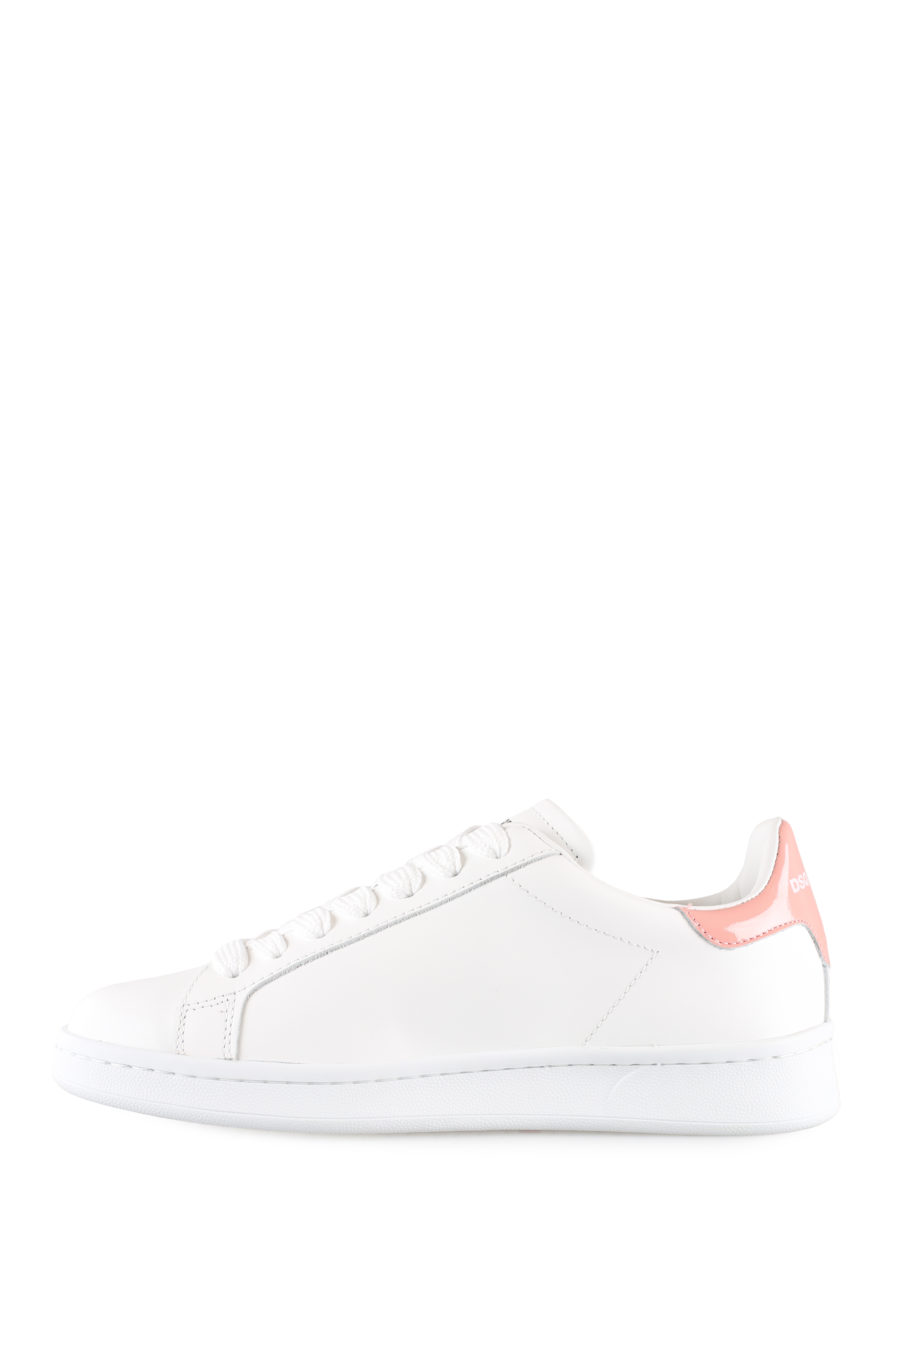 Zapatillas blancas con logo hoja rosa - IMG 0030